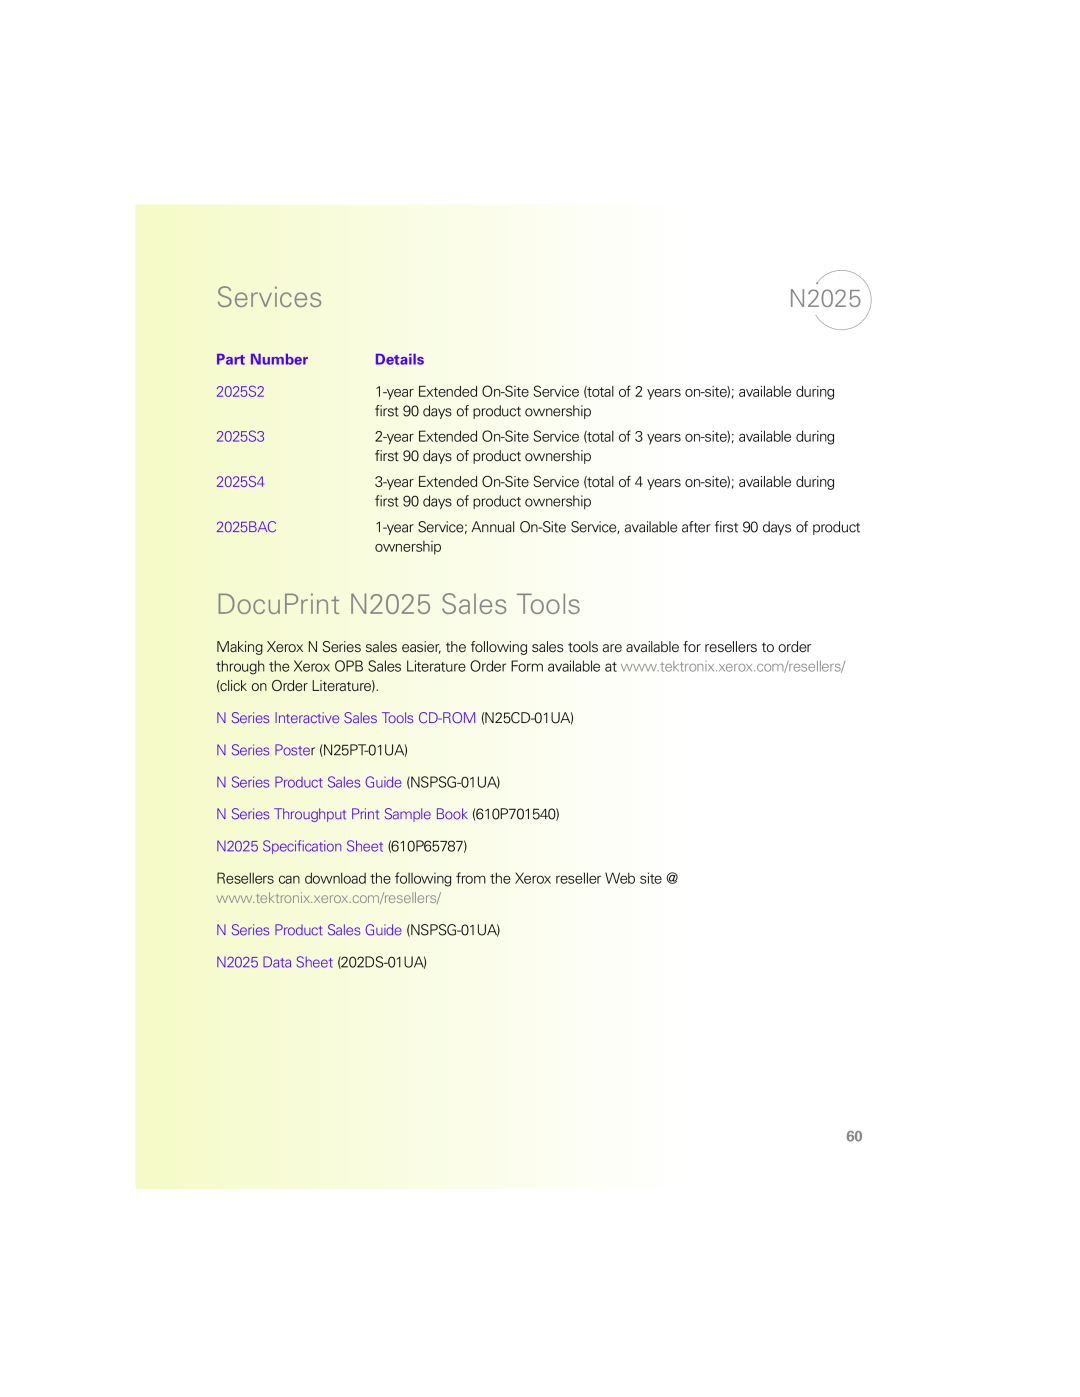 Xerox N Series manual DocuPrint N2025 Sales Tools, Services, Part Number, Details 